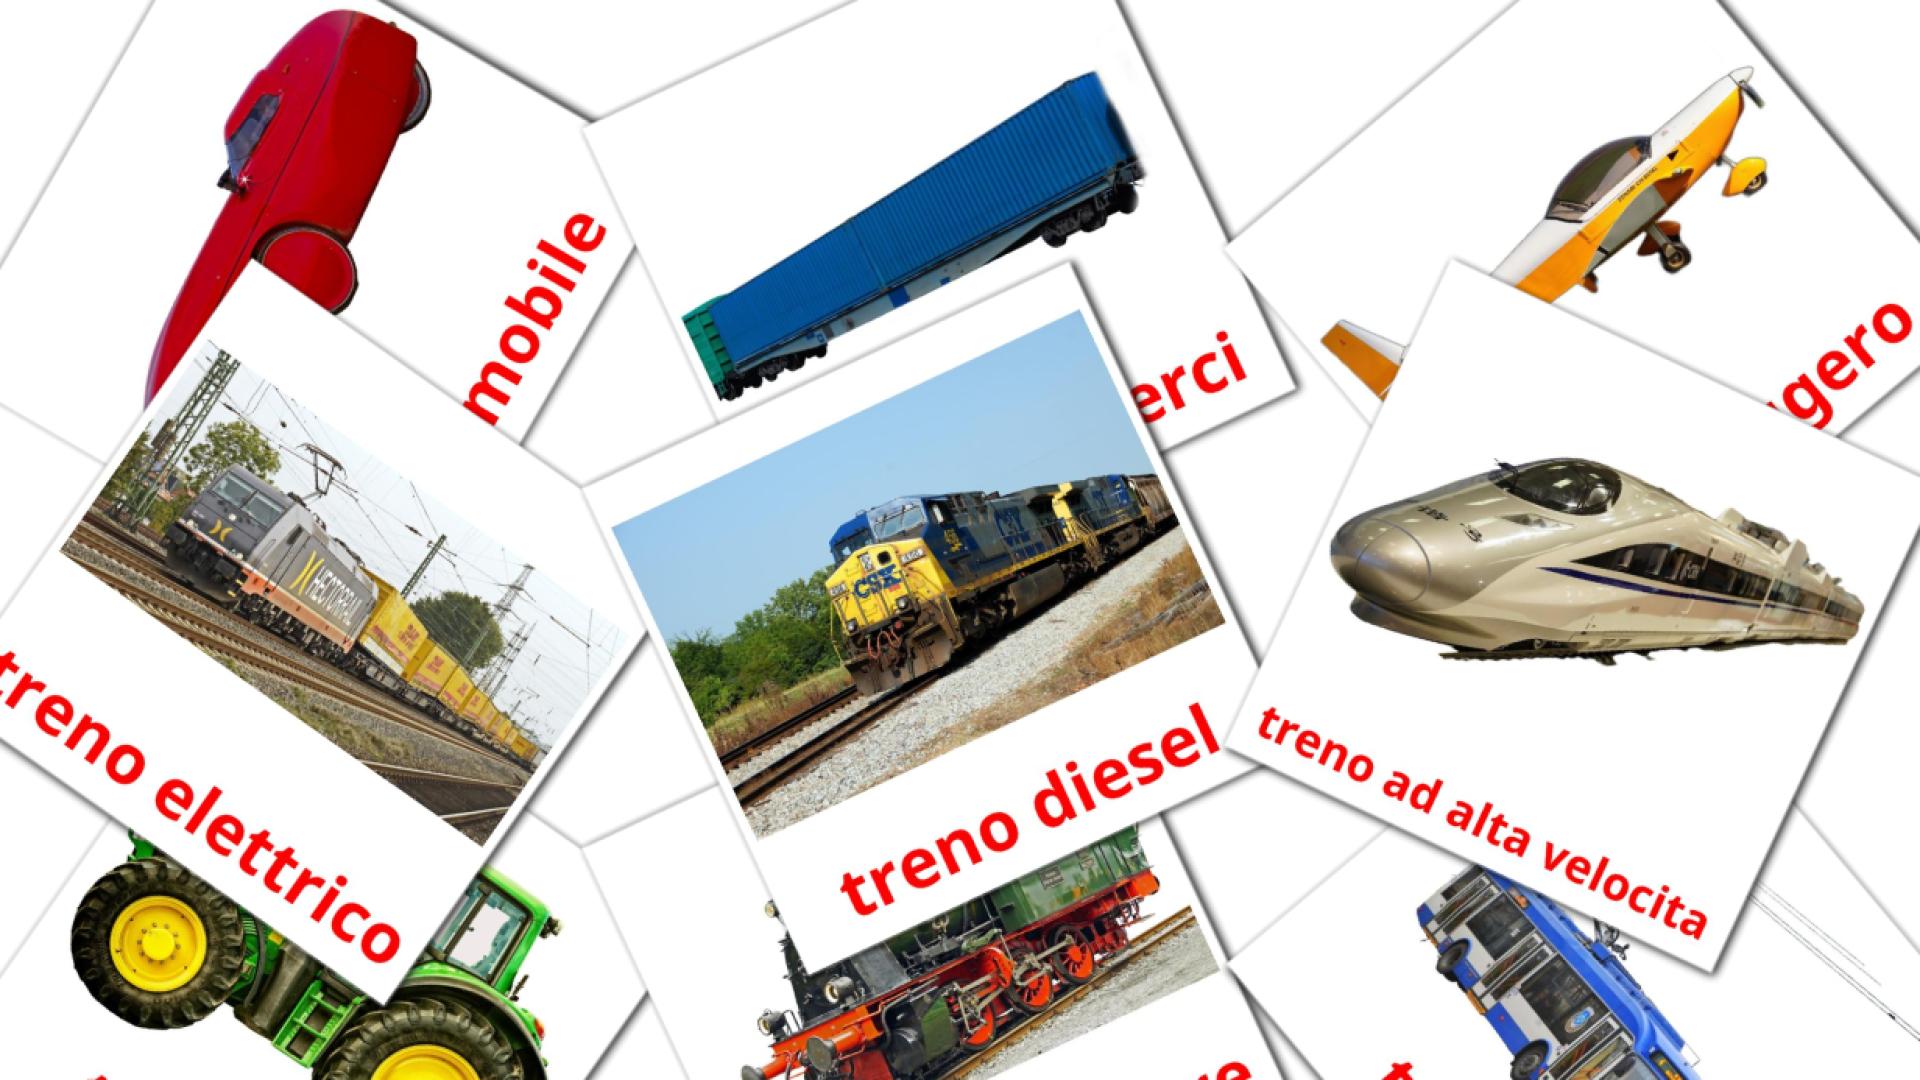 Mezzi di trasporto  italian vocabulary flashcards